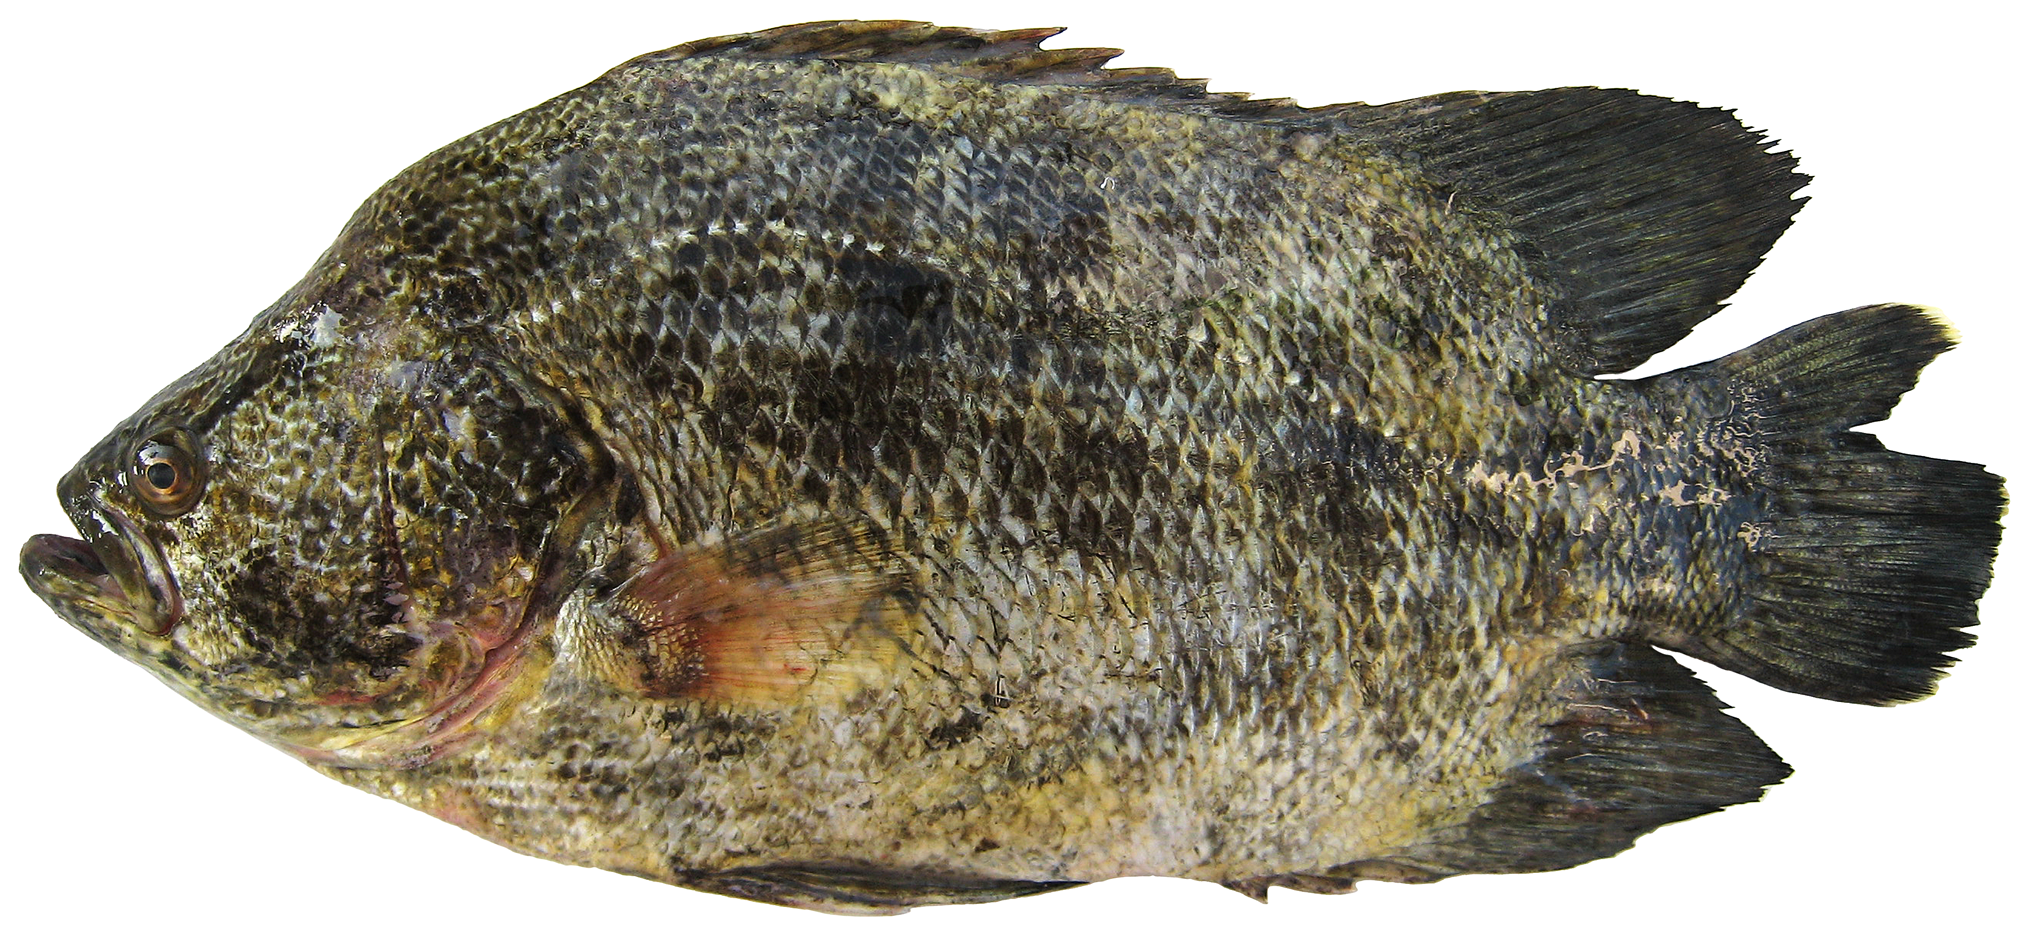 Atlantic tripletail (Lobotes surinamensis) - Picture Fish